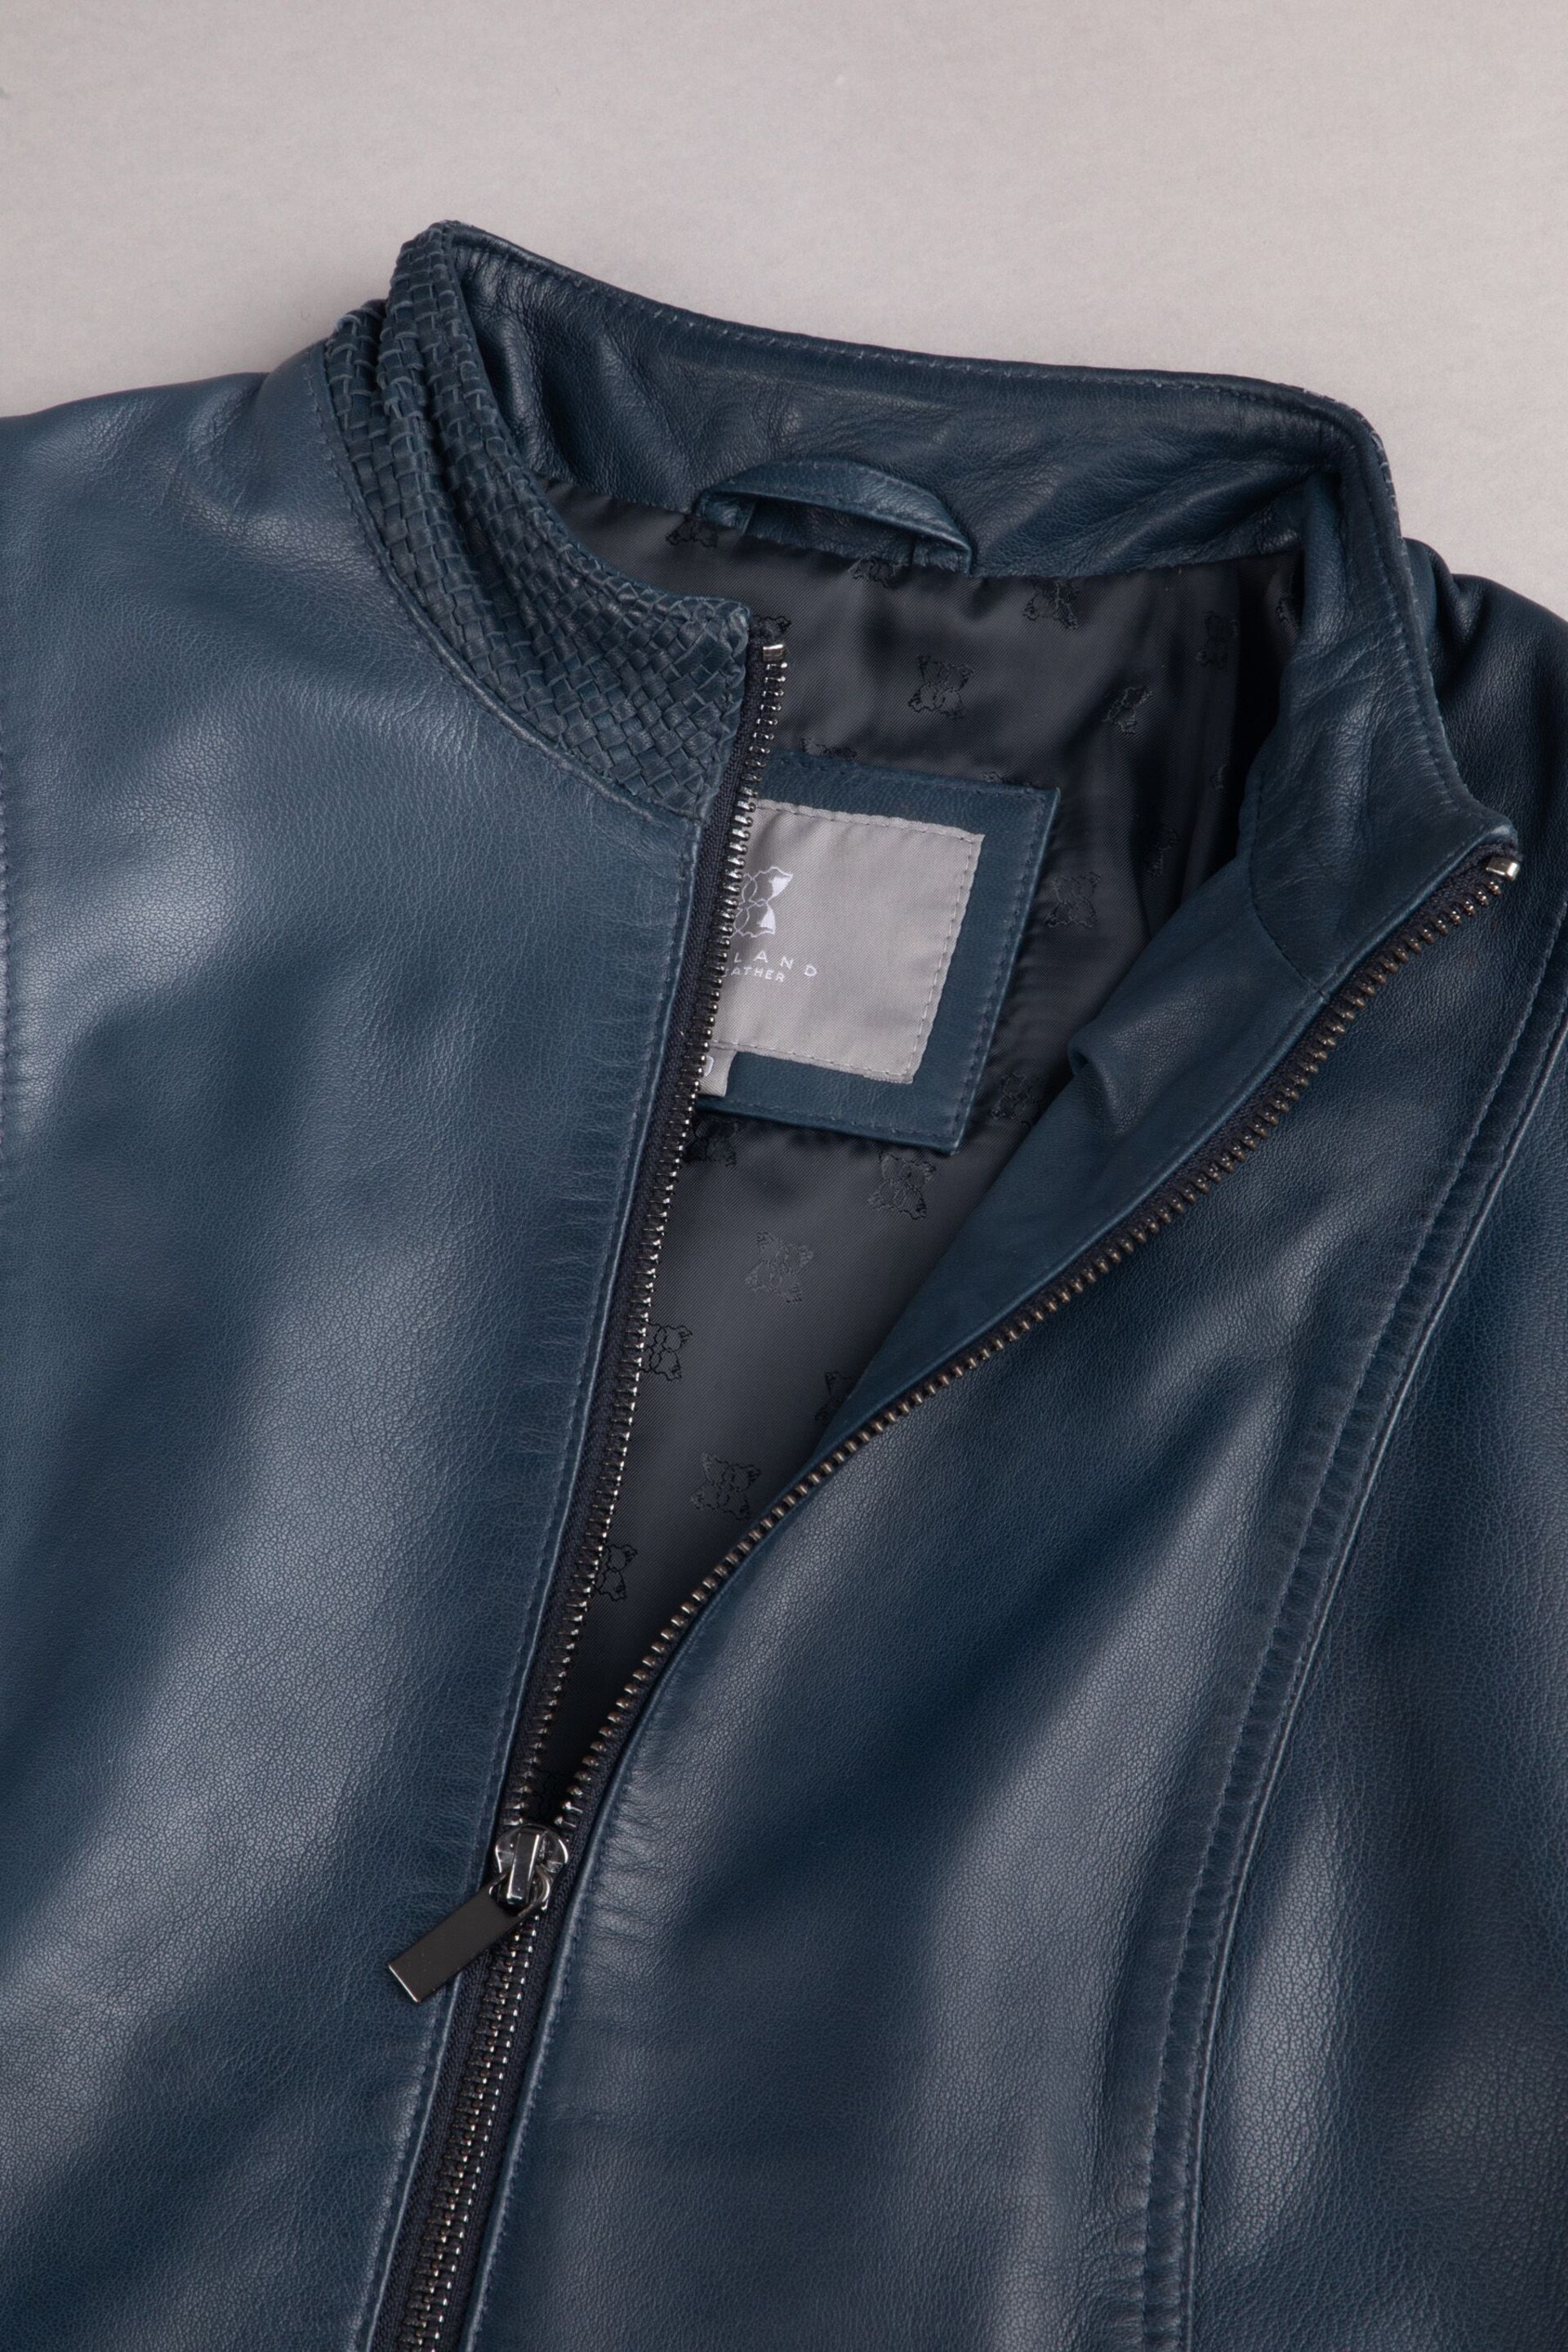 Lakeland Leather Navy Anthorn Leather Jacket - Image 4 of 5